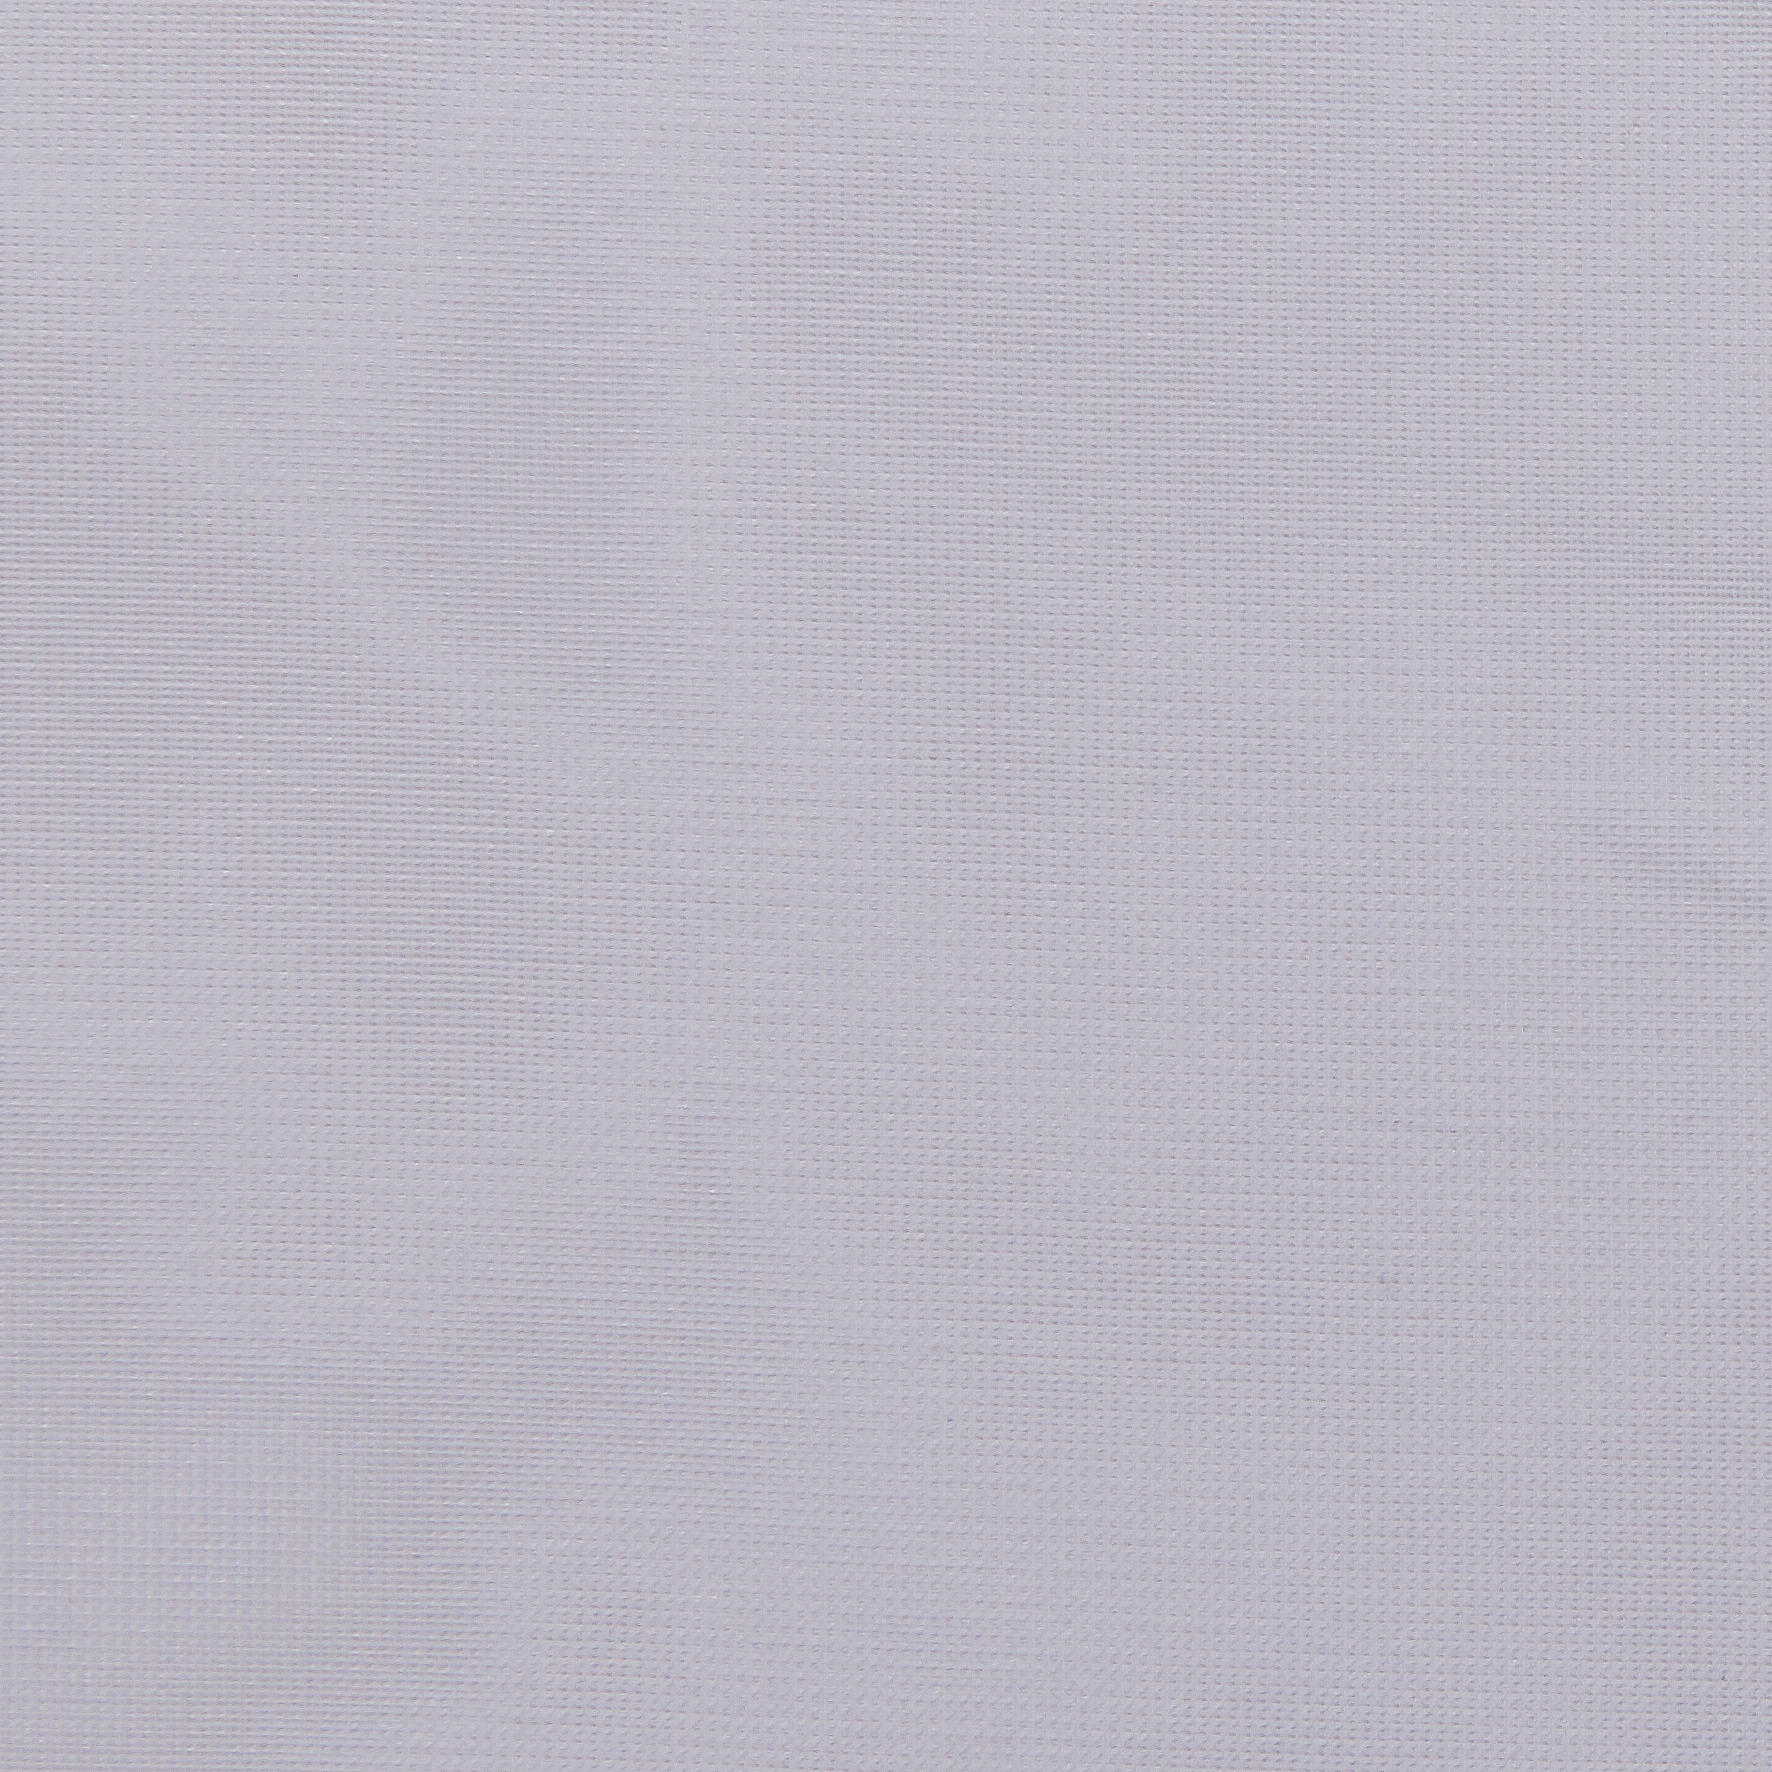 Ösenvorhang Micha weiß B/L: ca. 135x235 cm Micha - weiß (135,00/235,00cm)